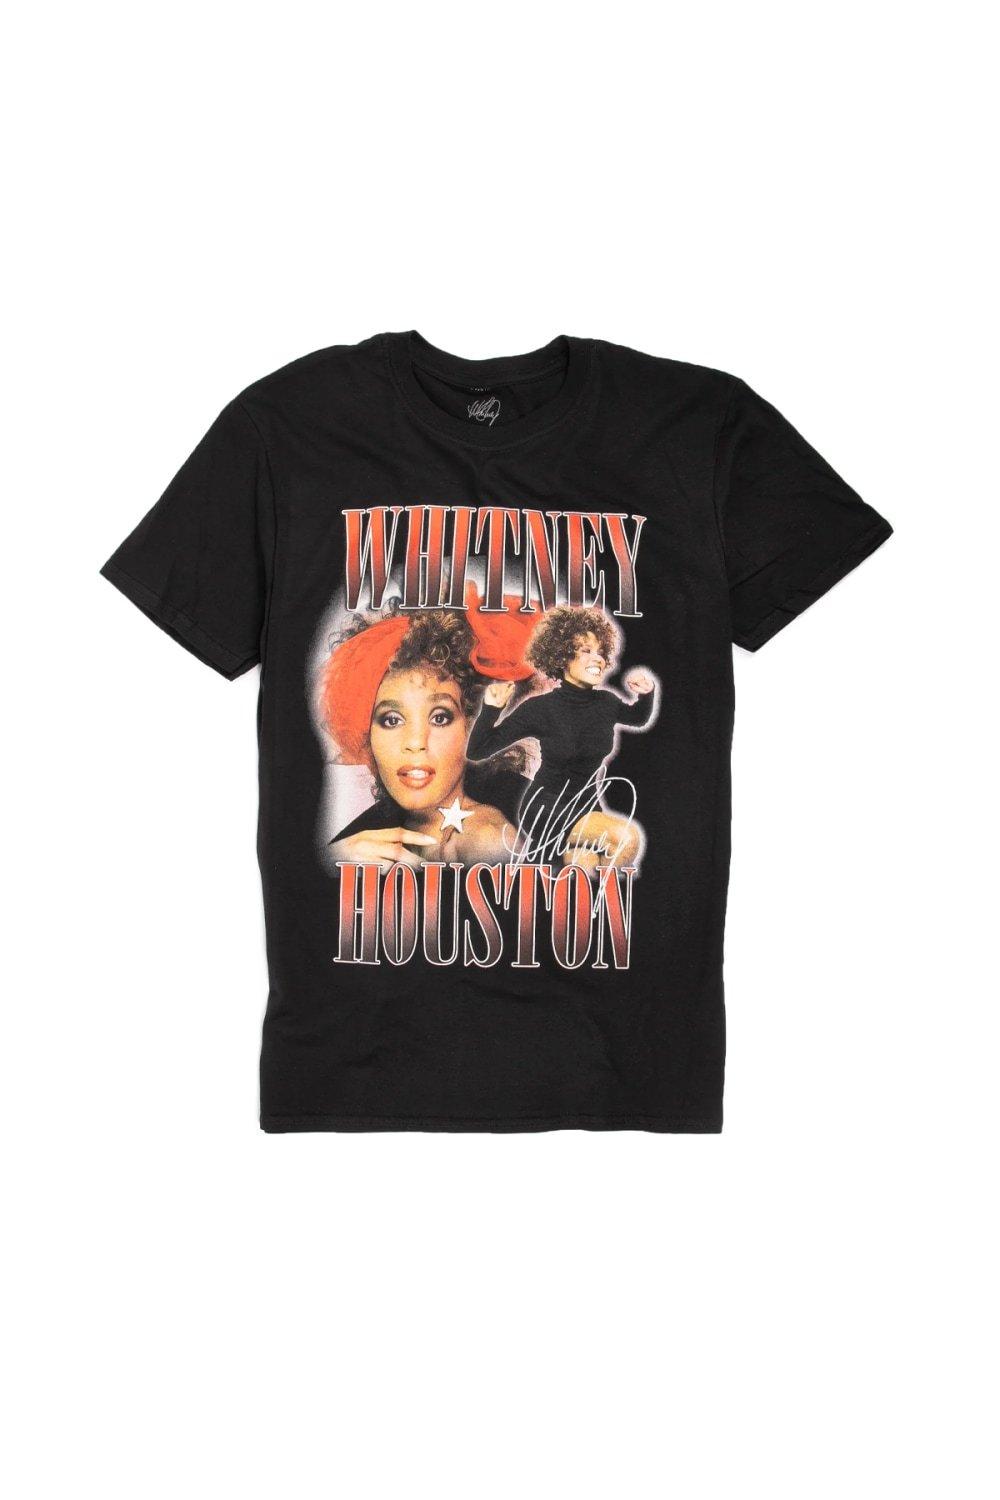 Хлопковая футболка в стиле 90-х годов Whitney Houston, черный 1 шт f45698 подшипник с иглой фотография 722083810